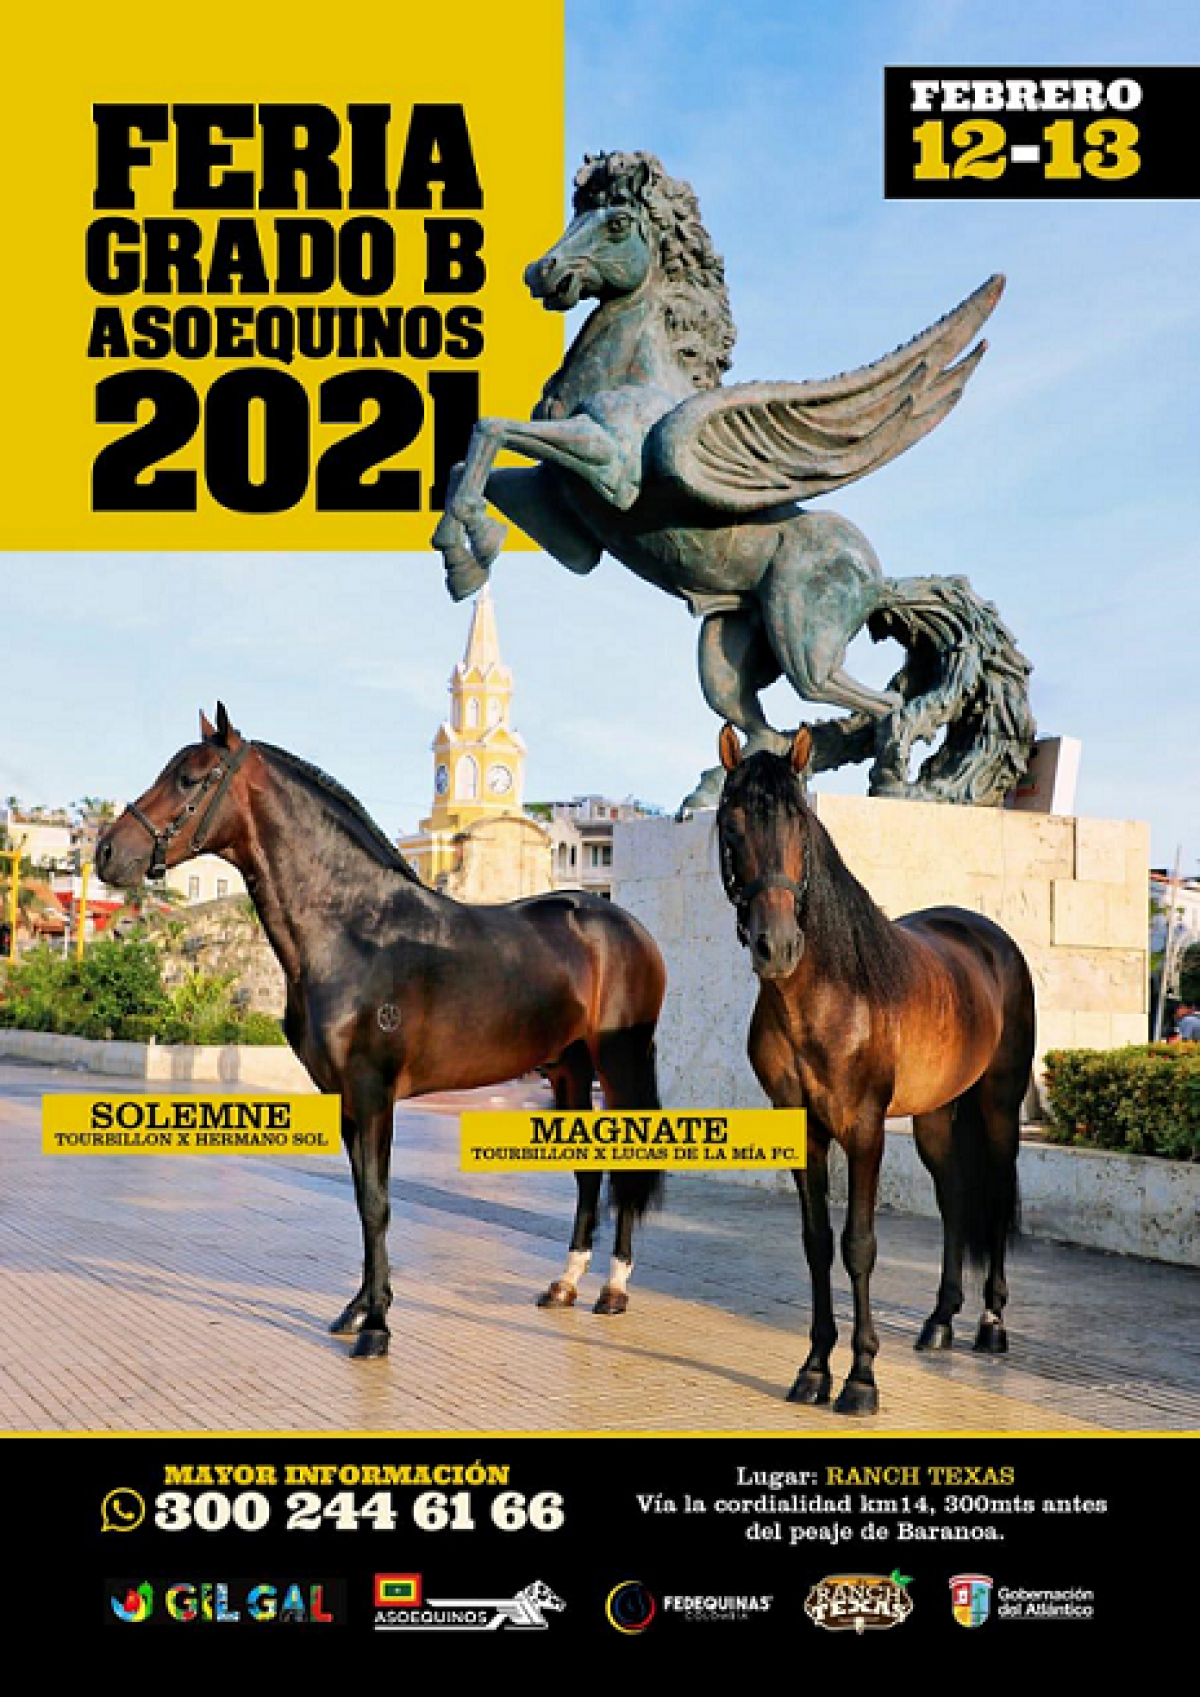 Feria Grado B ASOEQUINOS 2021